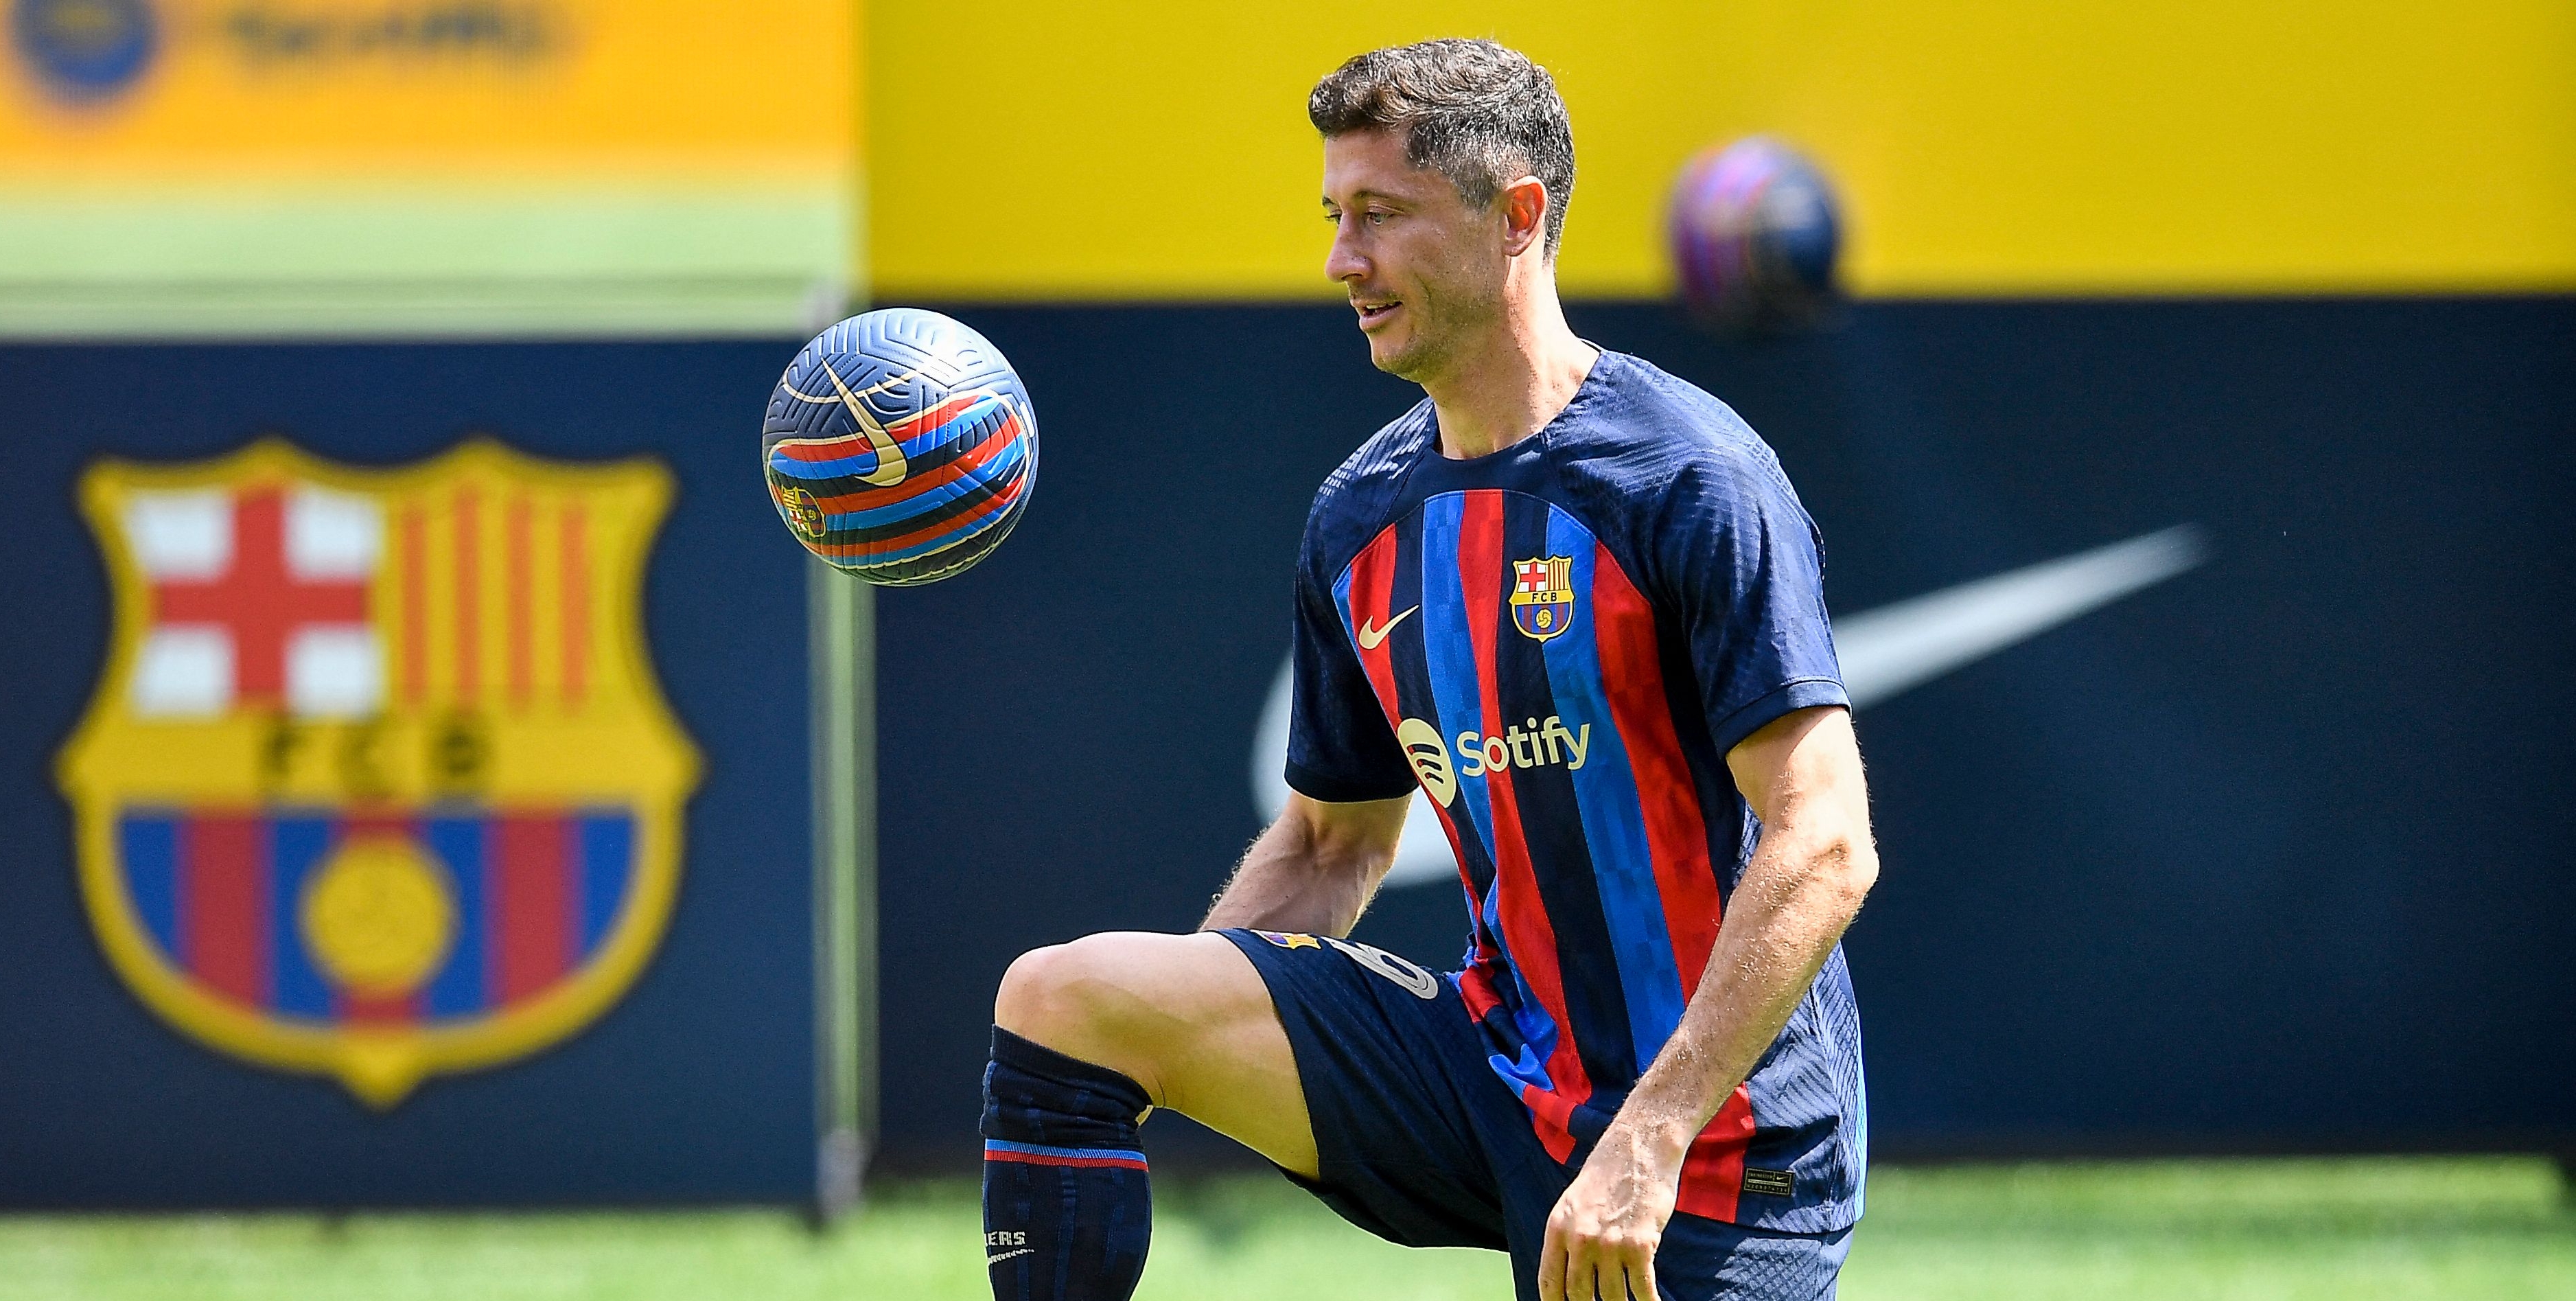 Lewandowskimostró sus habilidades con el balón ante la presencia de un buen número de aficionados en el Camp Nou. (Foto Prensa Libre: AFP)